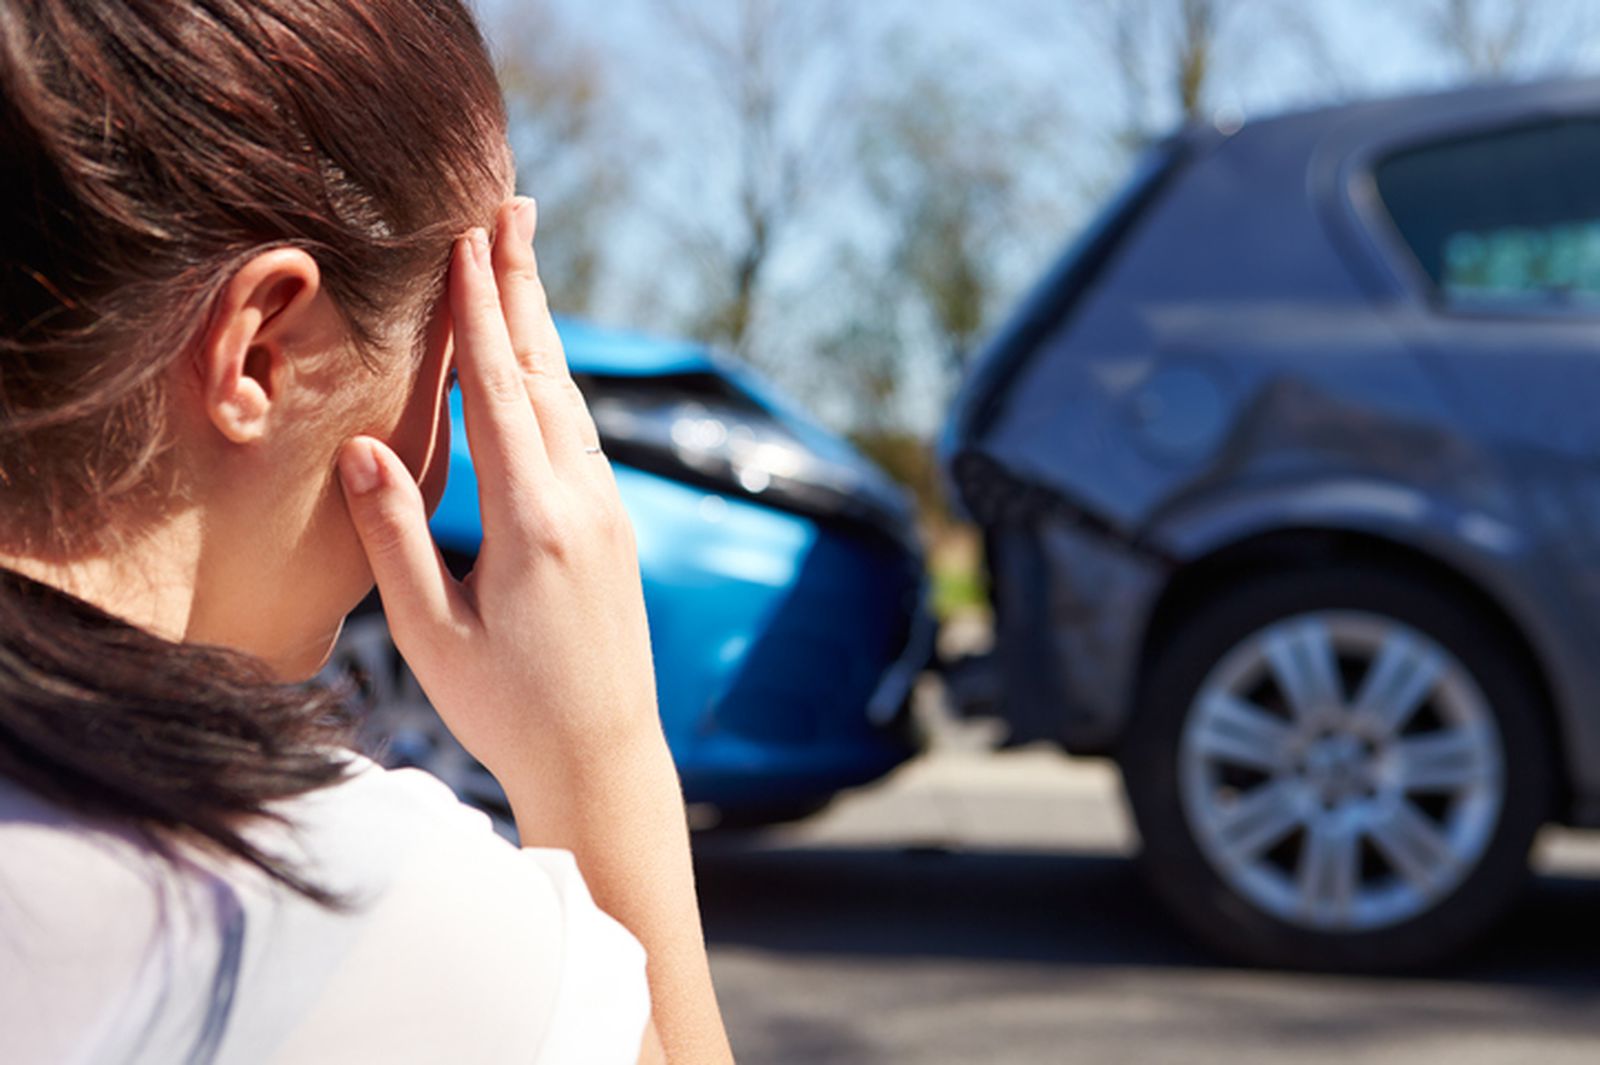 Oтчукувањата на срцето влијаат на времето на реакција на возачот во сообраќајот и на ризикот од сообраќајни незгоди